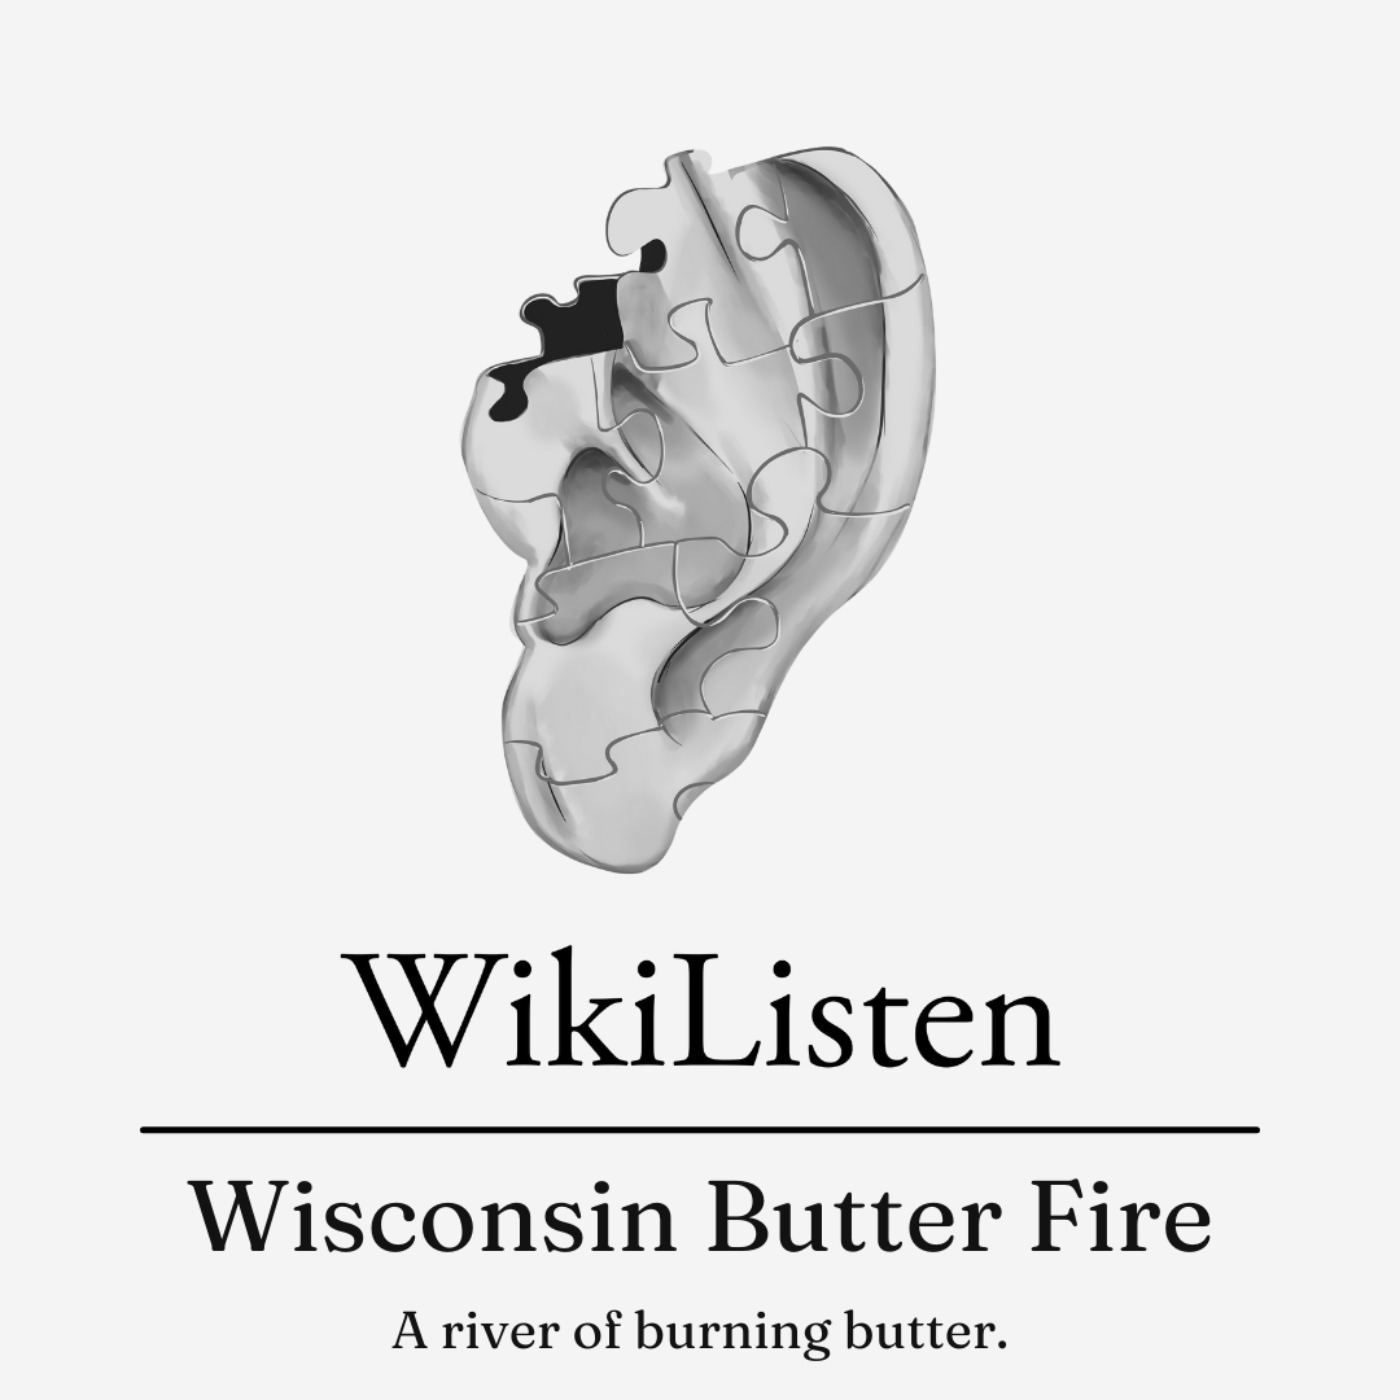 Wisconsin Butter Fire